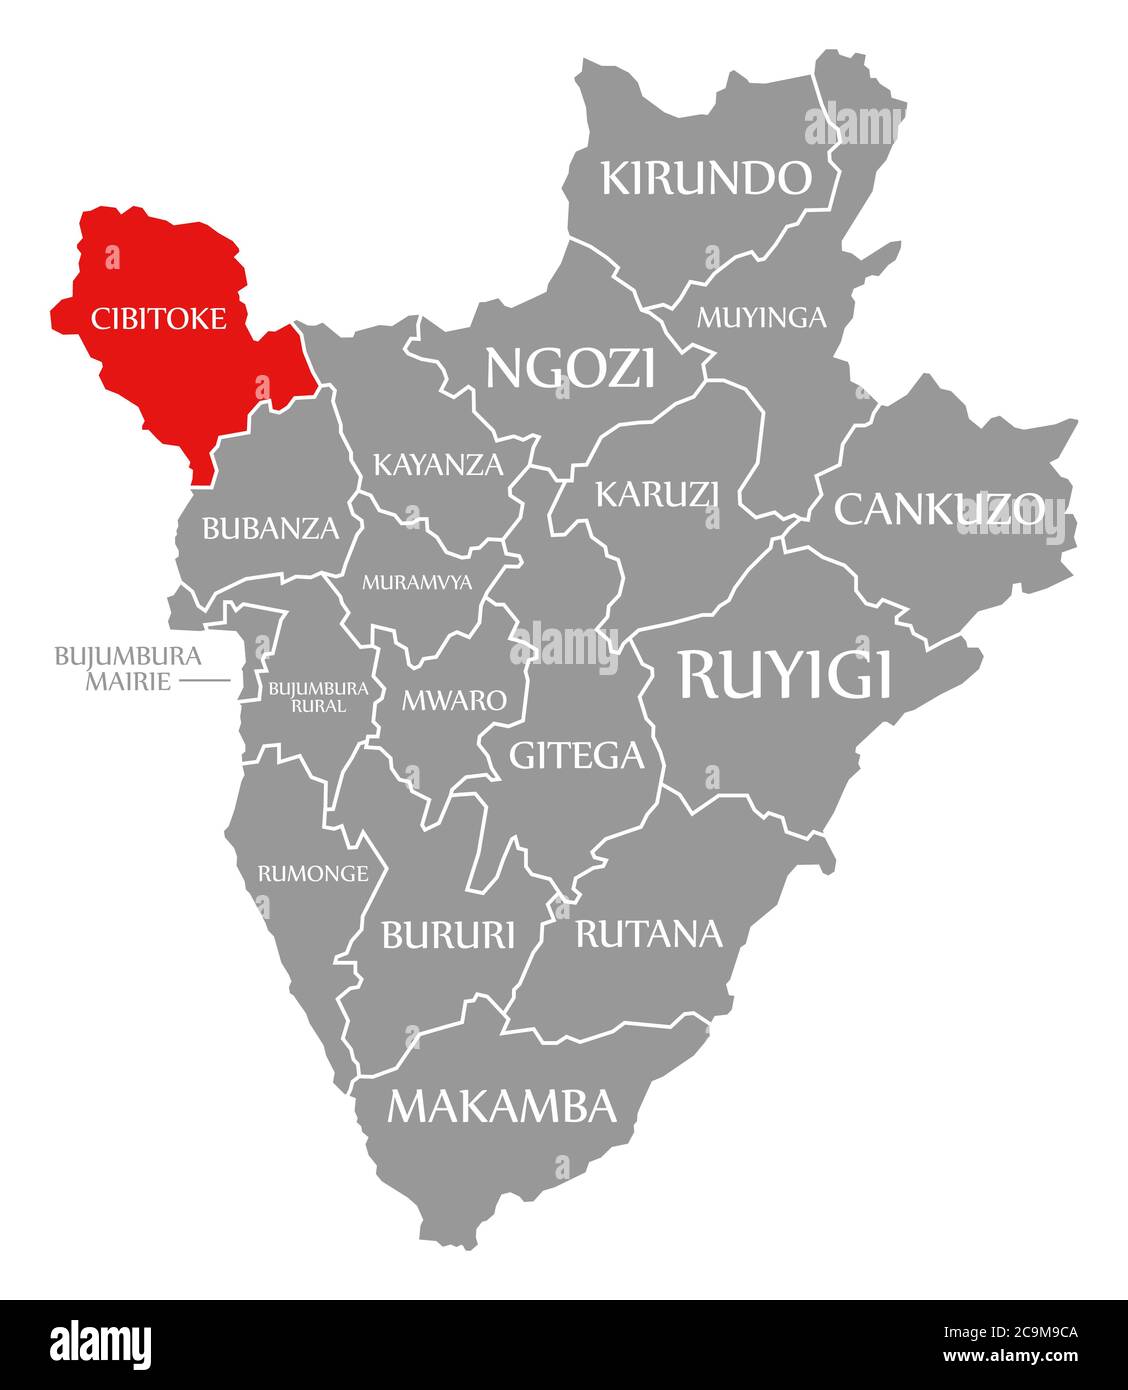 Cibitoke rouge mis en évidence sur la carte du Burundi Banque D'Images